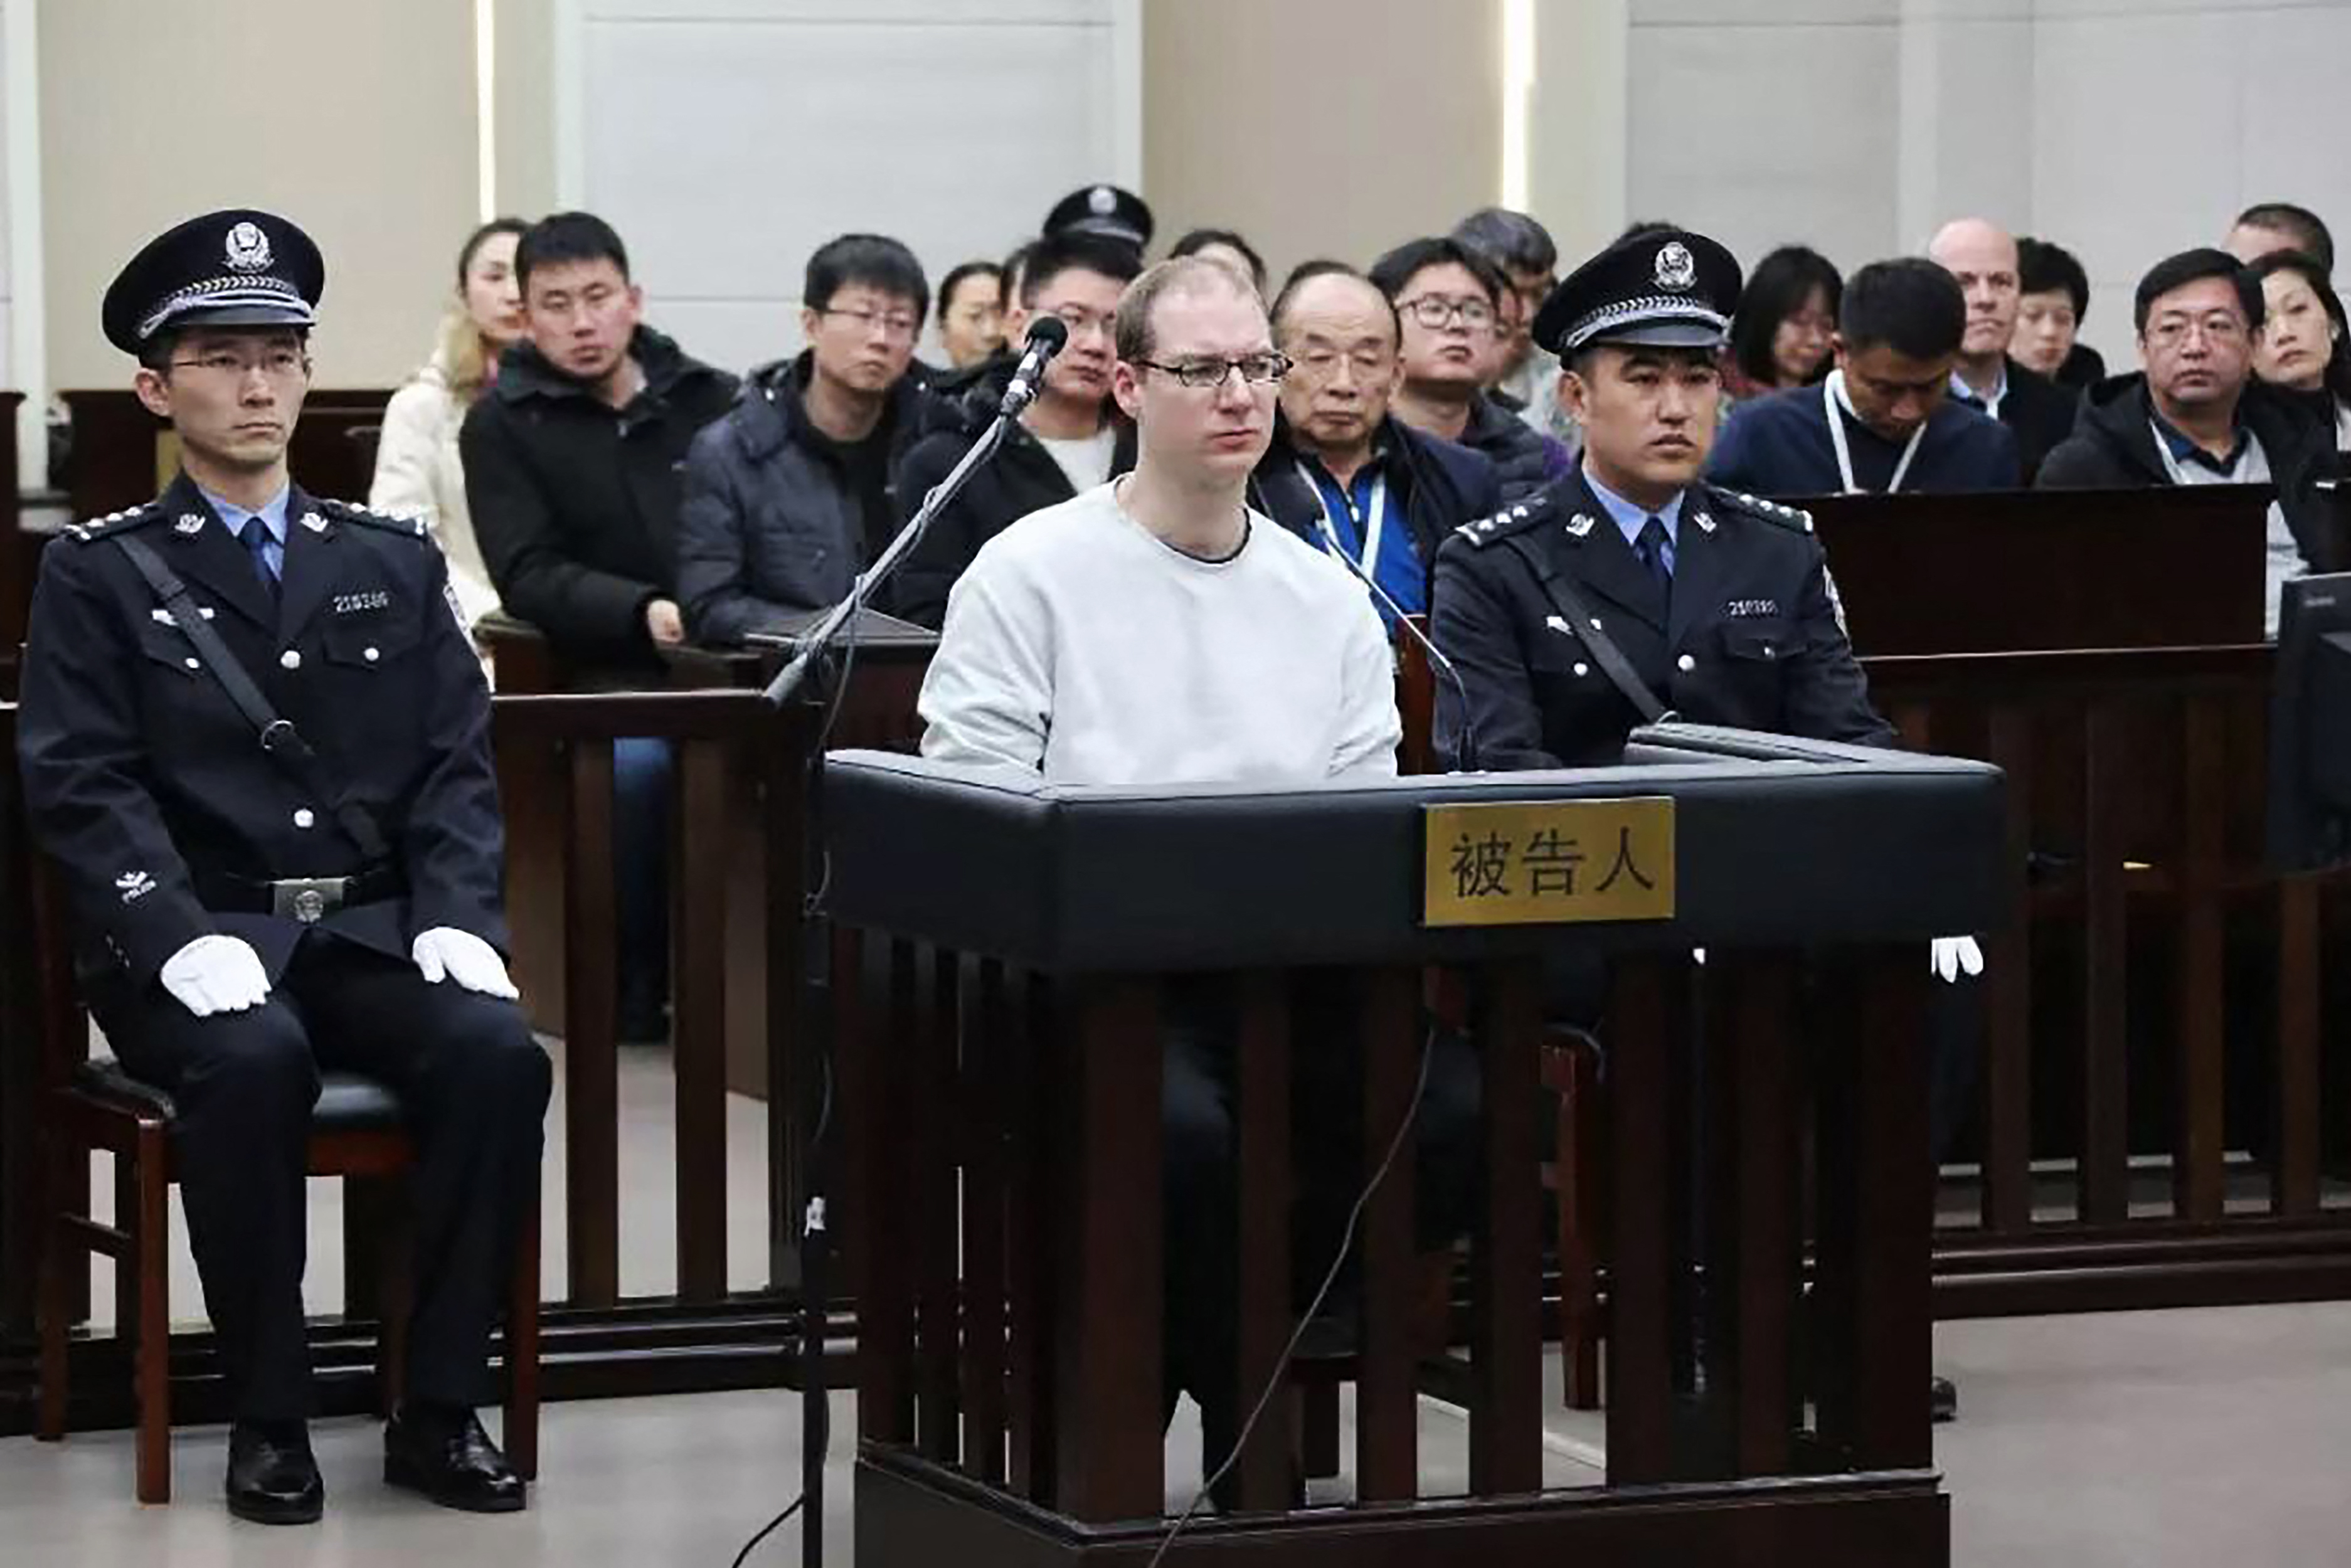 Elutasította a kínai bíróság a halálra ítélt kanadai drogcsempész fellebbezését